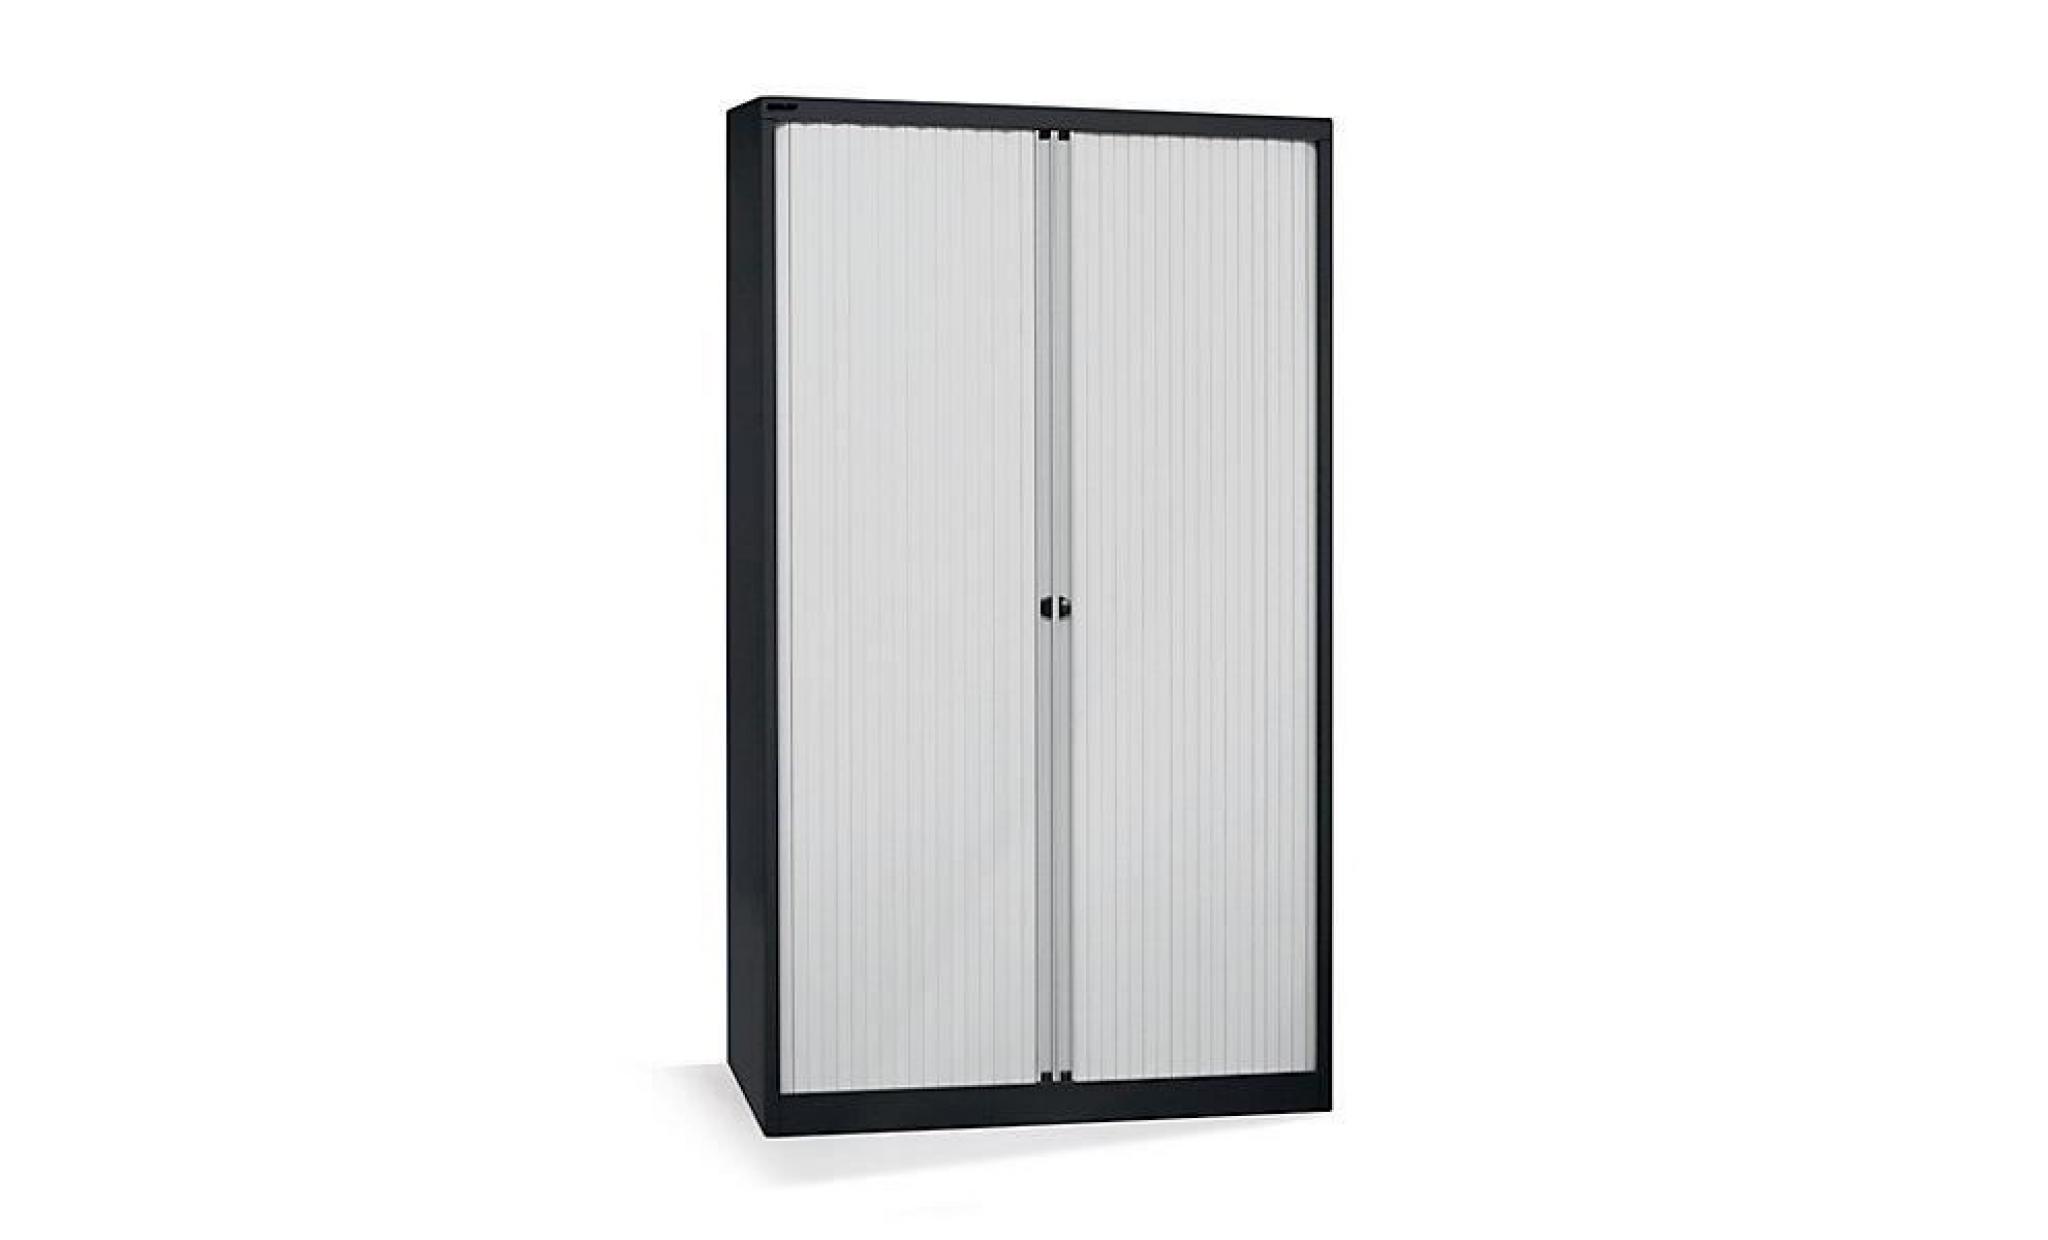 bisley armoire à rideaux   horizontal, noir profond / gris clair h x l 1030 x 800 mm, 2 tablettes   armoire basse armoire de bureau